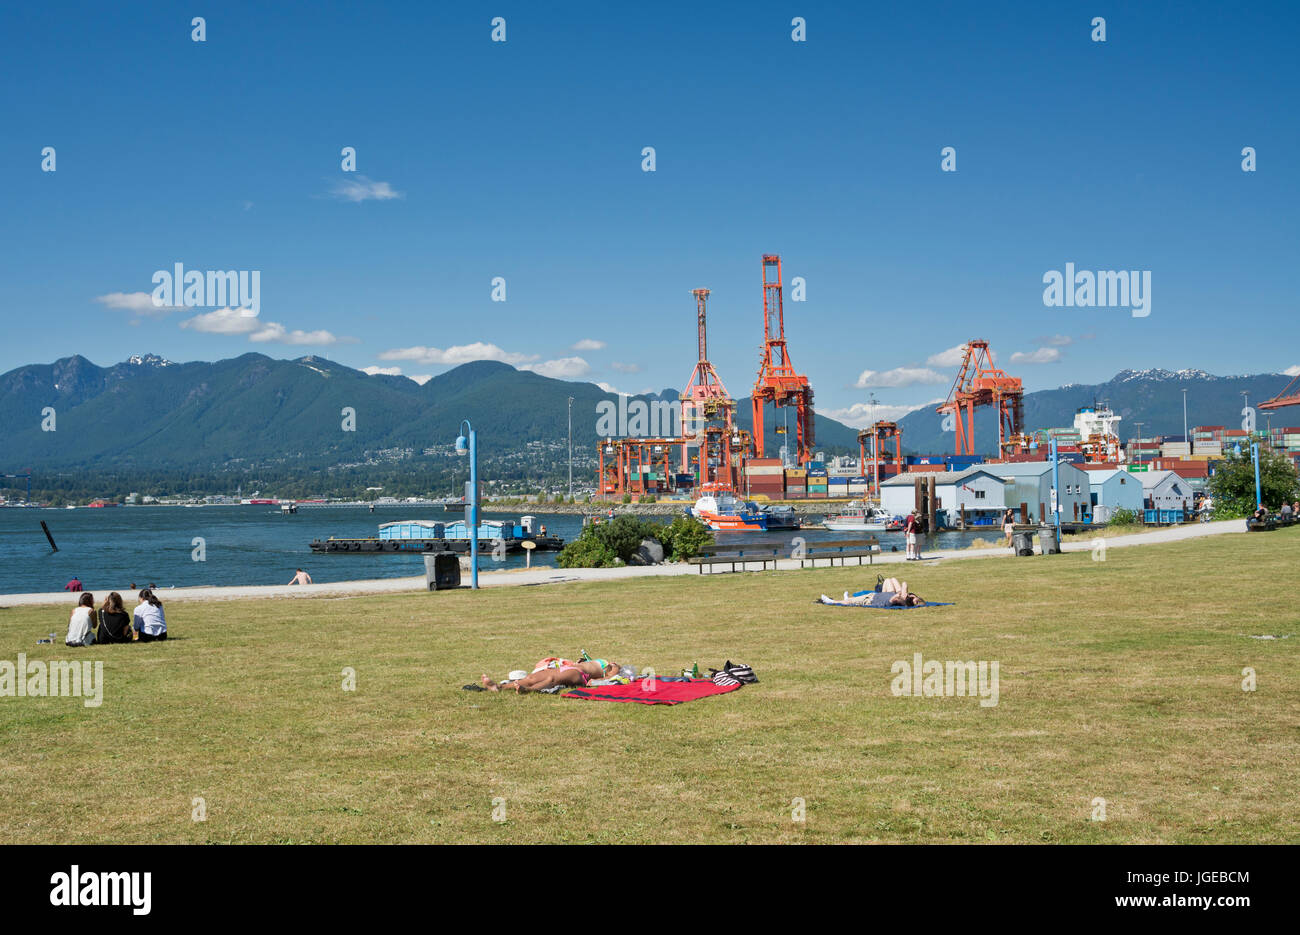 Parco del granchio in Vancouver BC- le persone a prendere il sole e godere la vista sull'acqua. Banchine di carico al Porto di Vancouver. Foto Stock